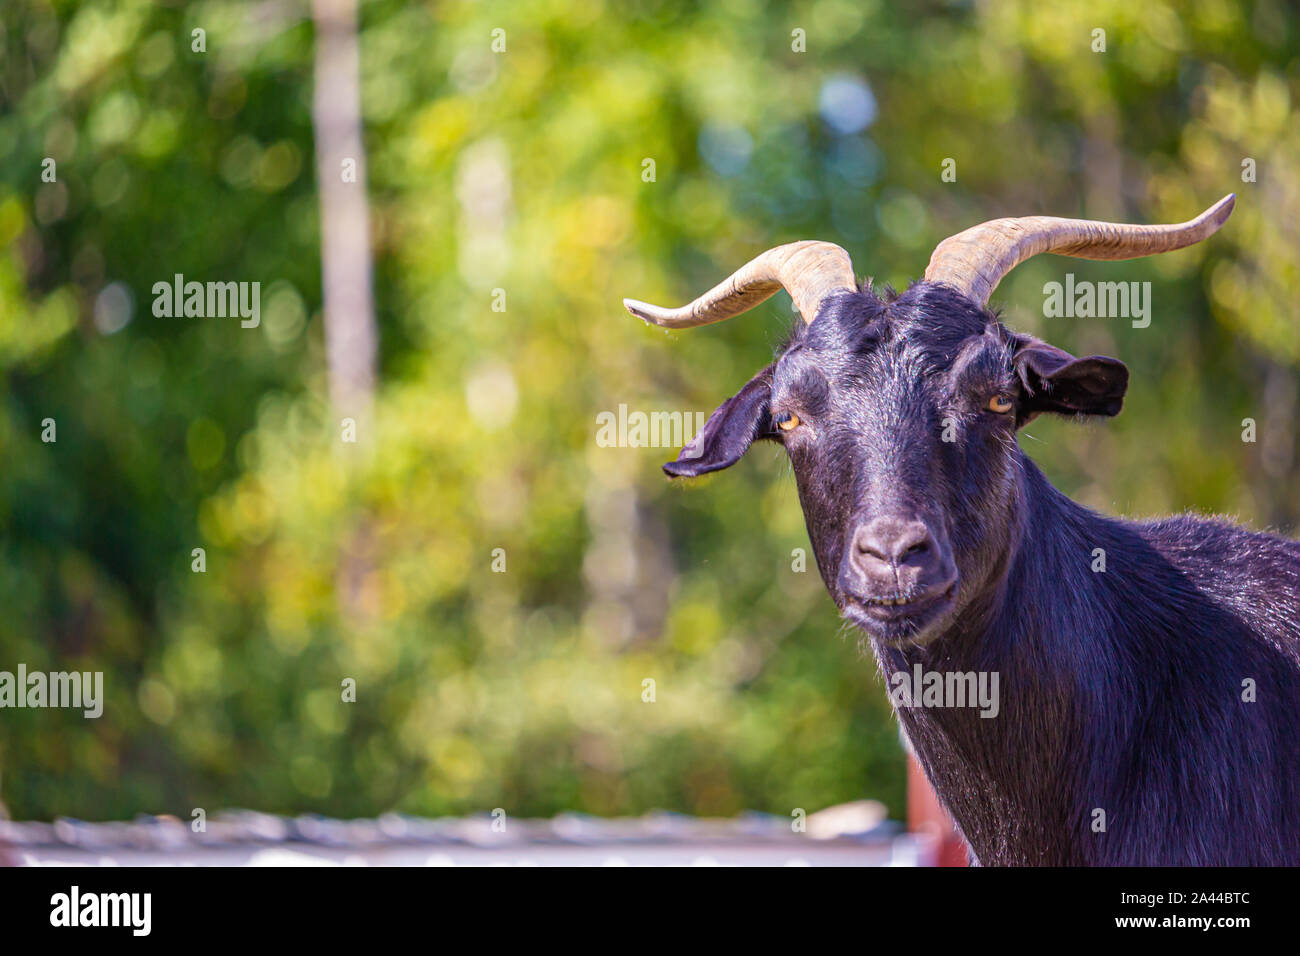 Eine schwarze, gehörnten Ziege schaut in Richtung der Kamera, in Fokus gegen einen unscharfen Hintergrund von grünem Laub. Stockfoto